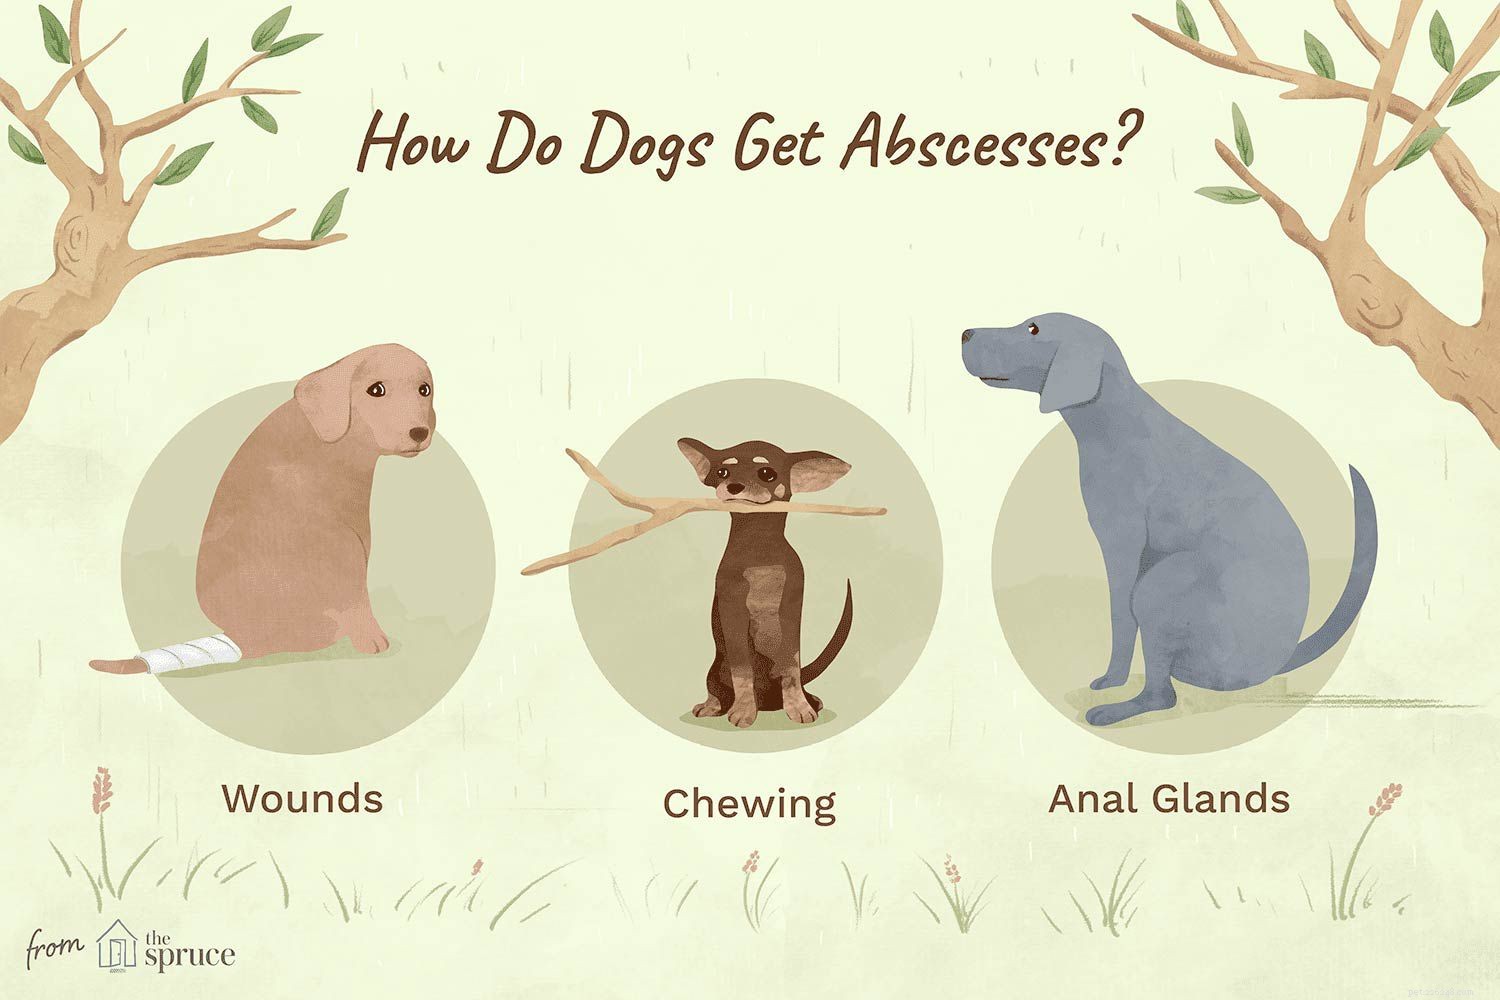 Hur man identifierar och behandlar bölder hos hundar